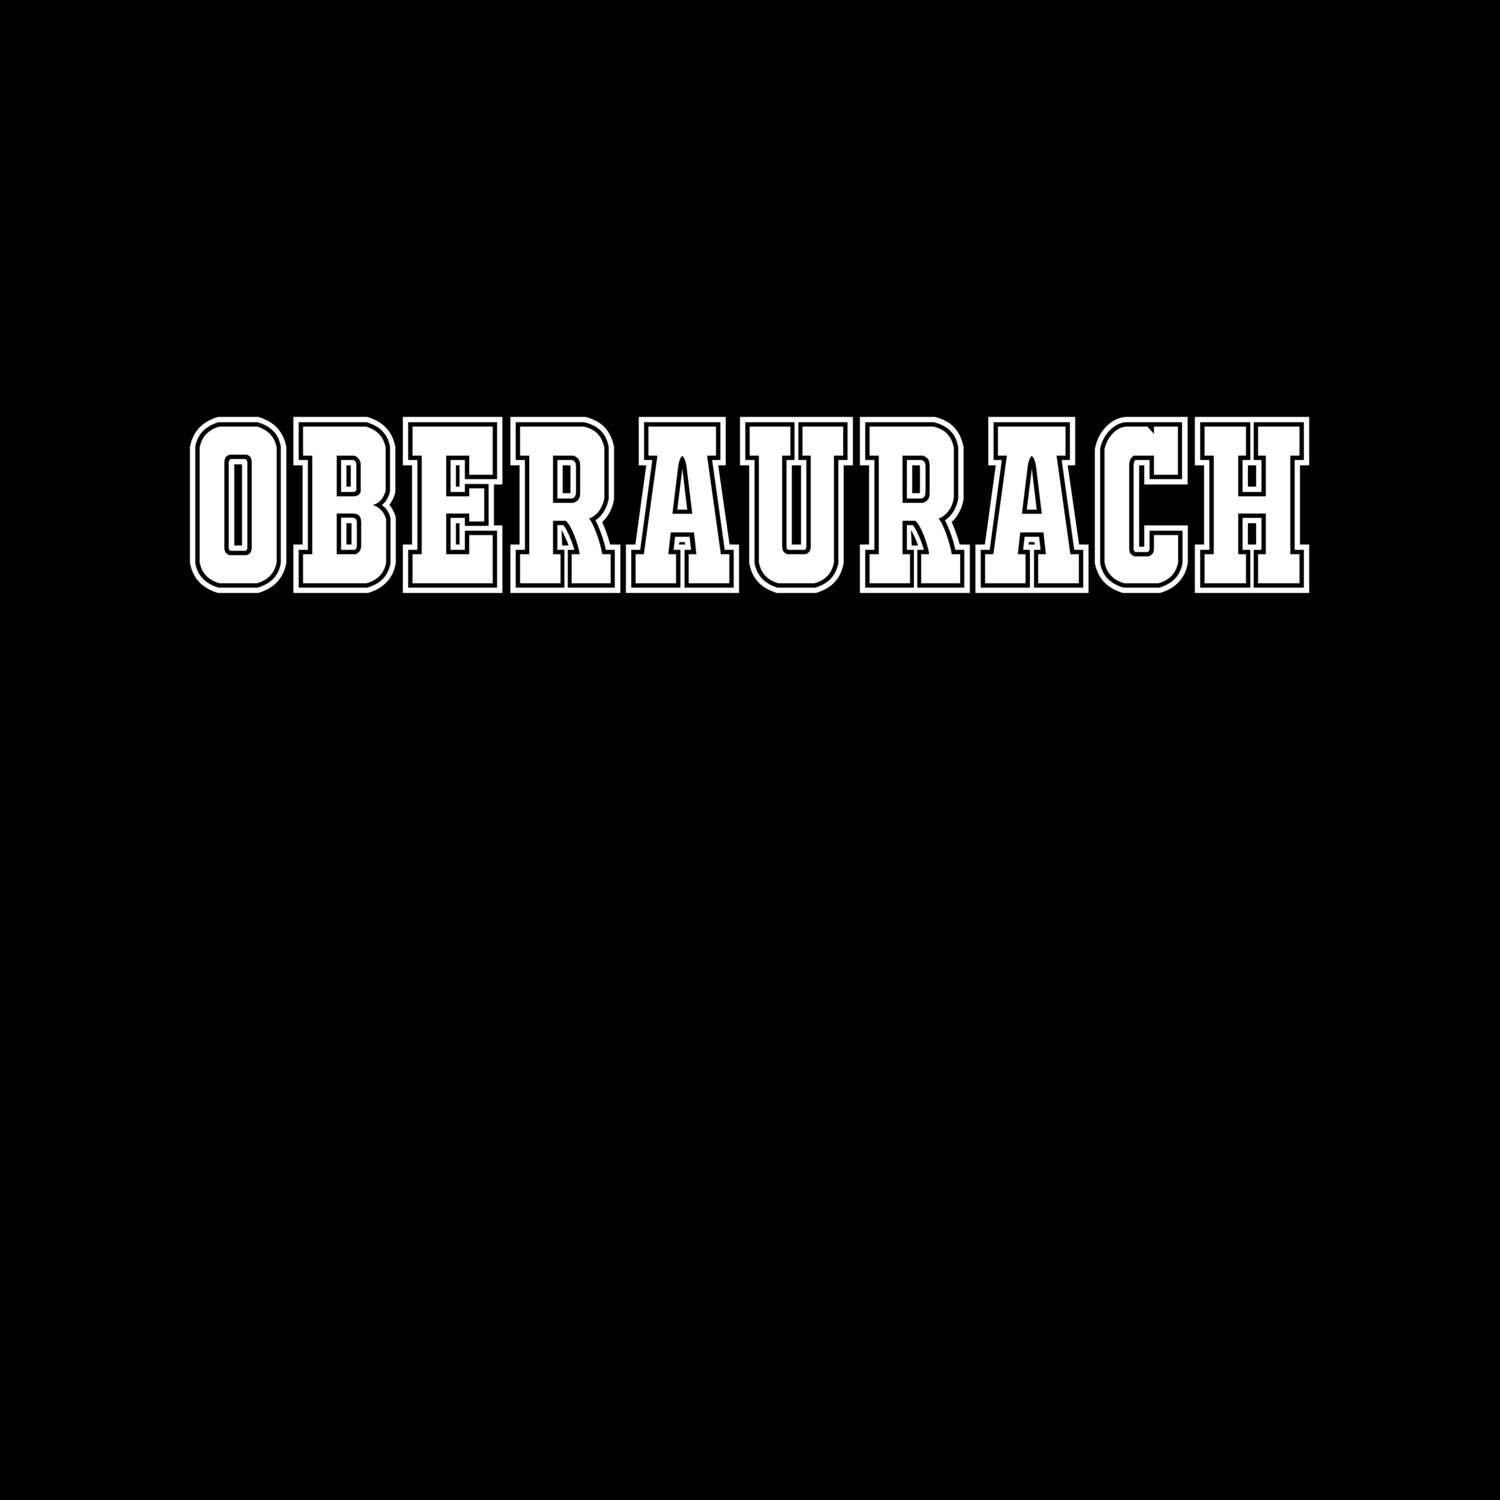 Oberaurach T-Shirt »Classic«